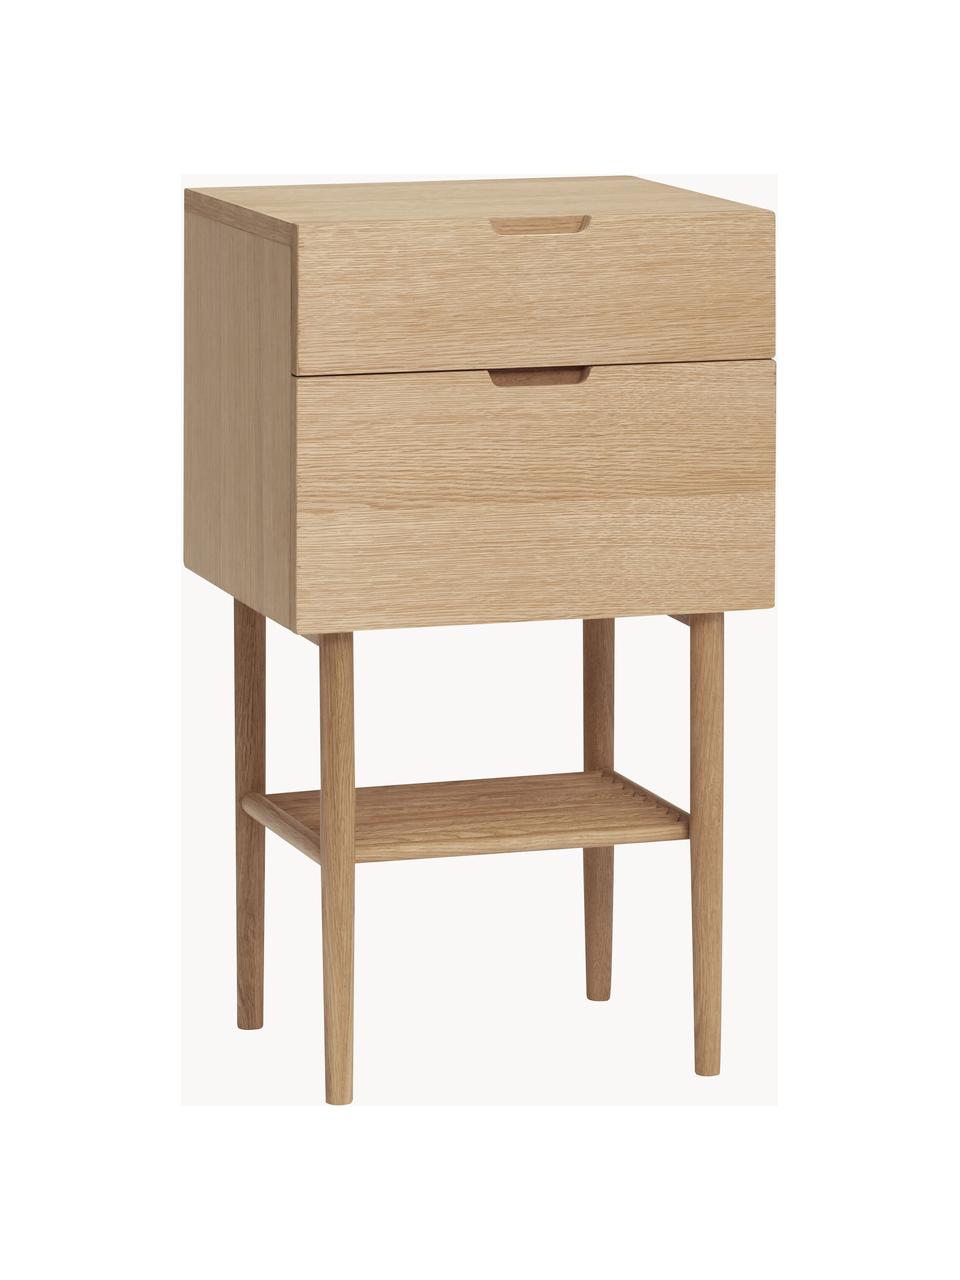 Drevený nočný stolík Acorn, Dubová dyha, dubové drevo, s FSC certifikátom, Drevo, svetlé, Š 40 x H 70 cm